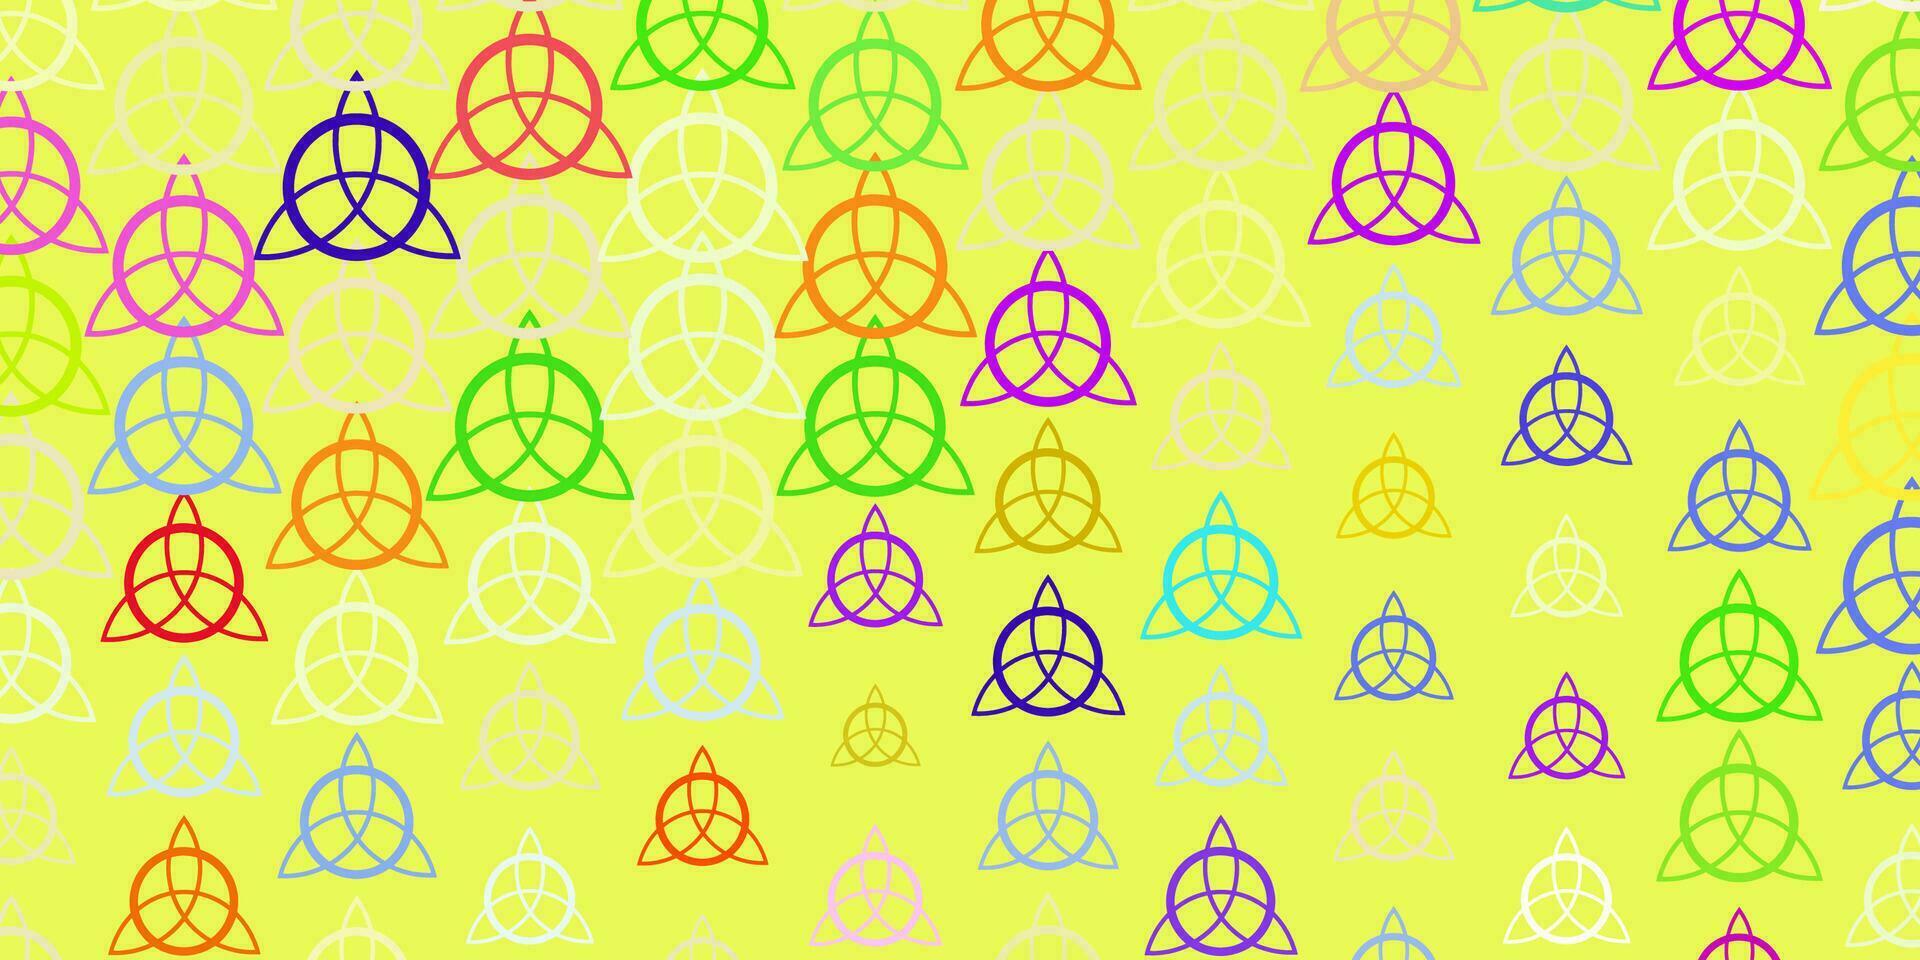 trama vettoriale multicolore leggera con simboli religiosi.